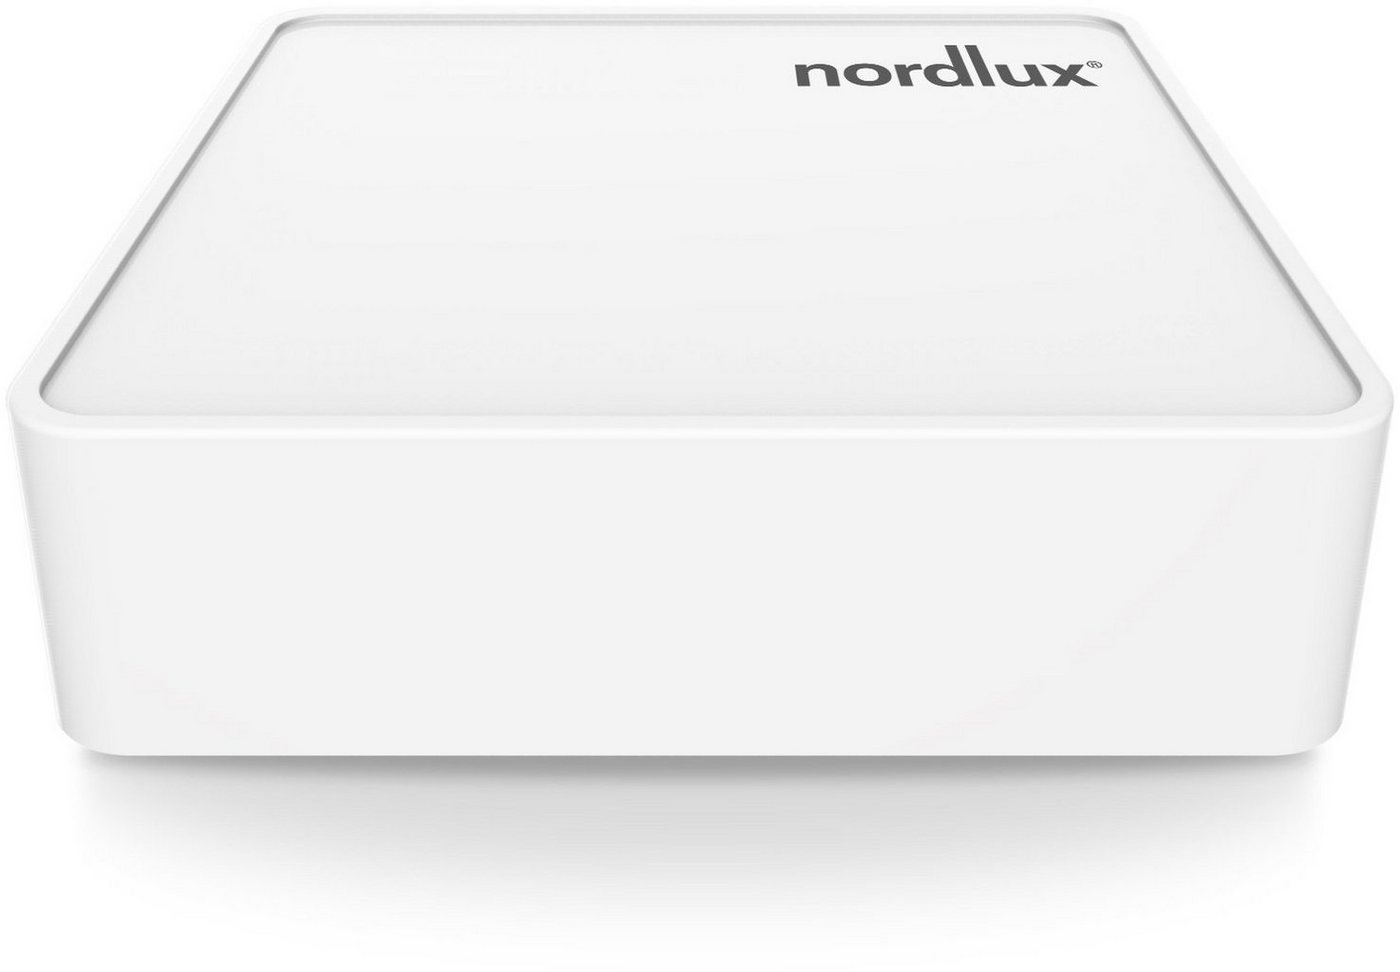 Nordlux Smartlight Bridge Smart-Home-Steuerelement, Smart Home Bridge, Wifi basiert von Nordlux